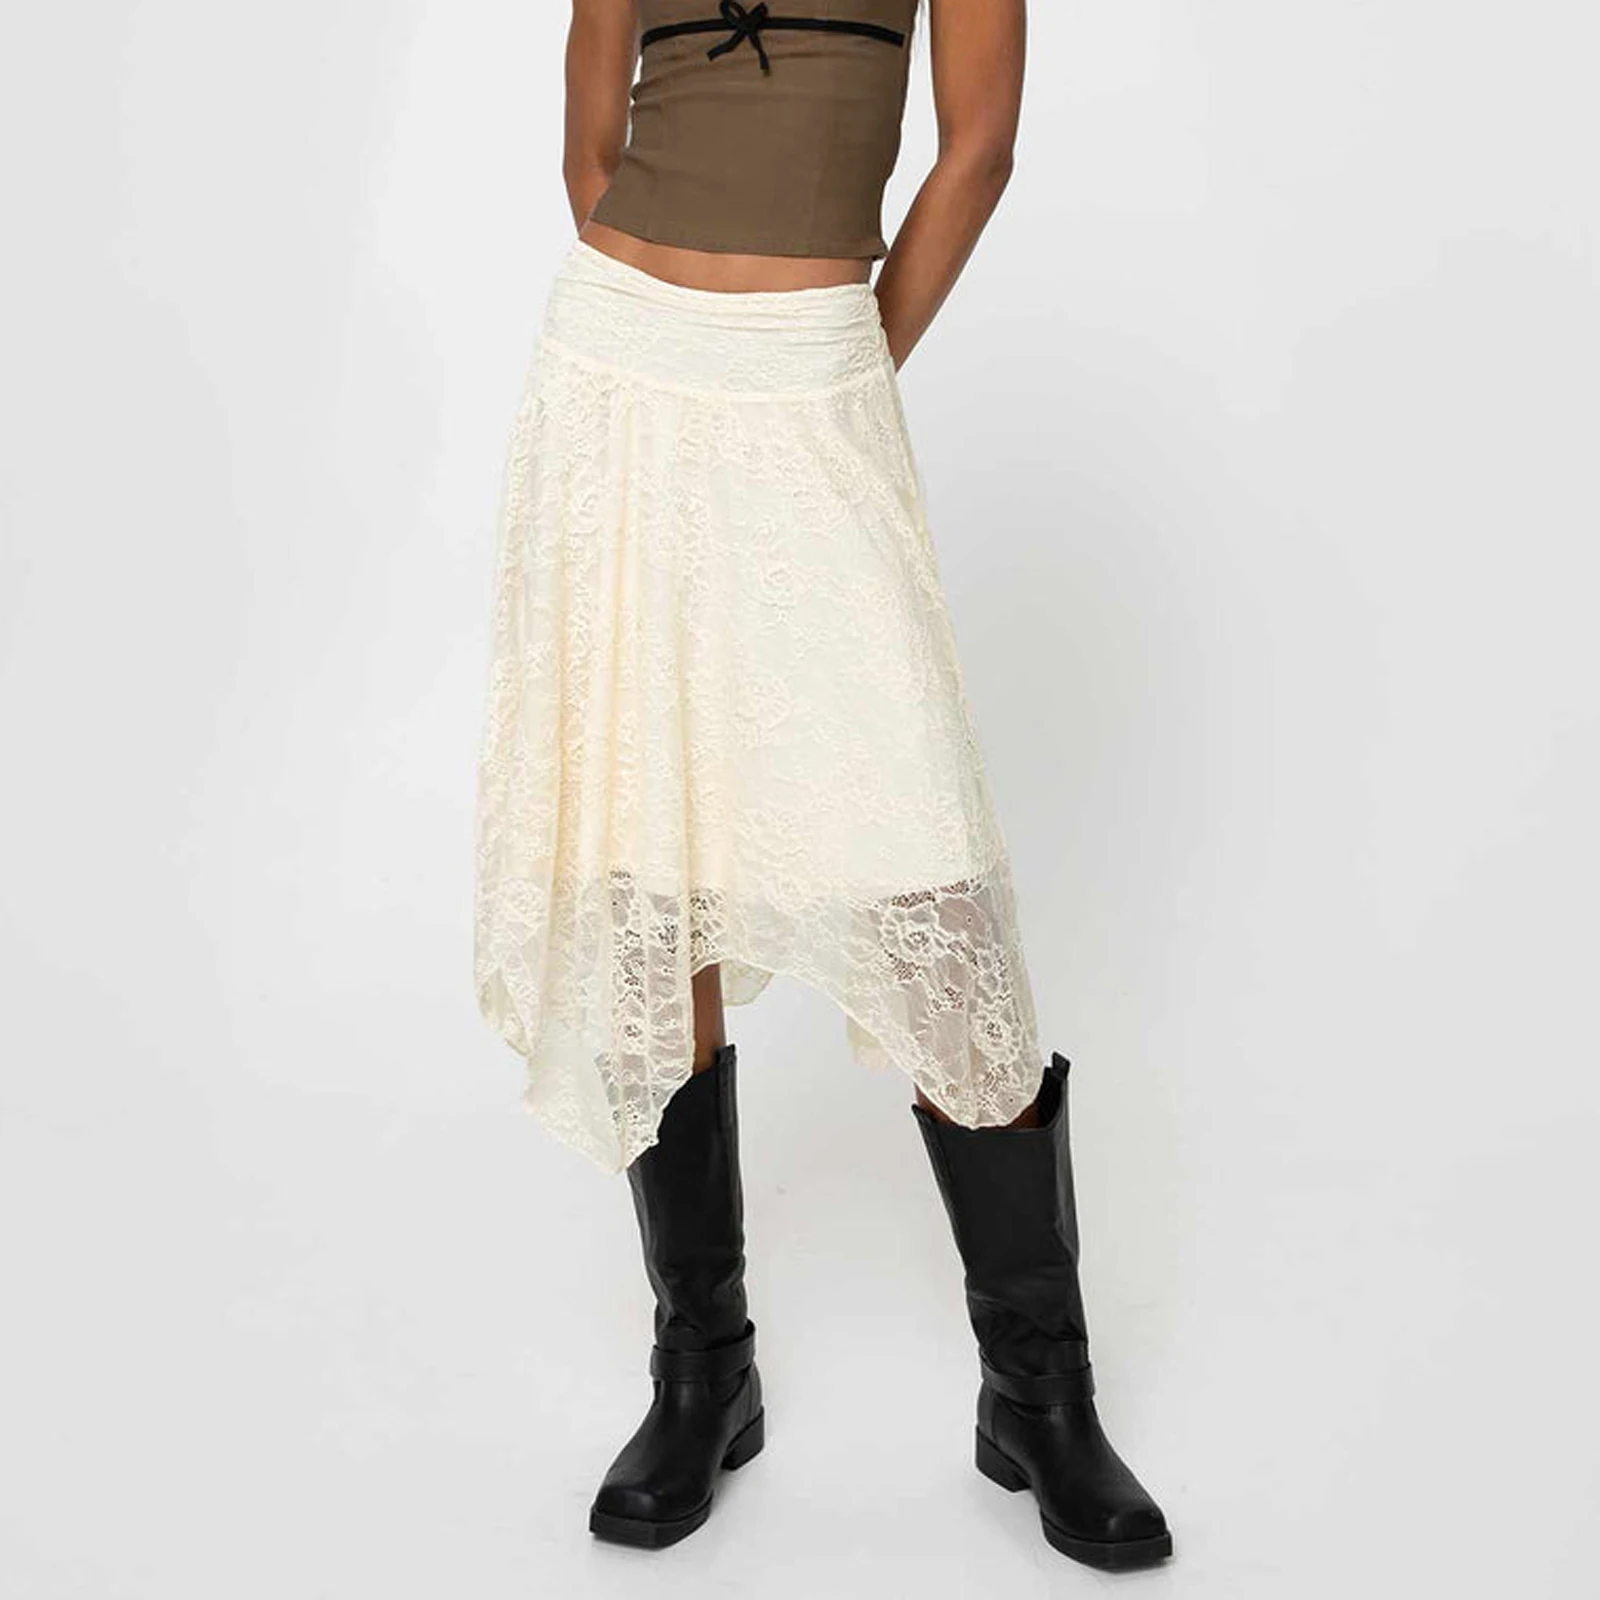 

Women Solid Lace Skirt Elegant Low Waisted Skirt Irregular Summer Midi Skirt